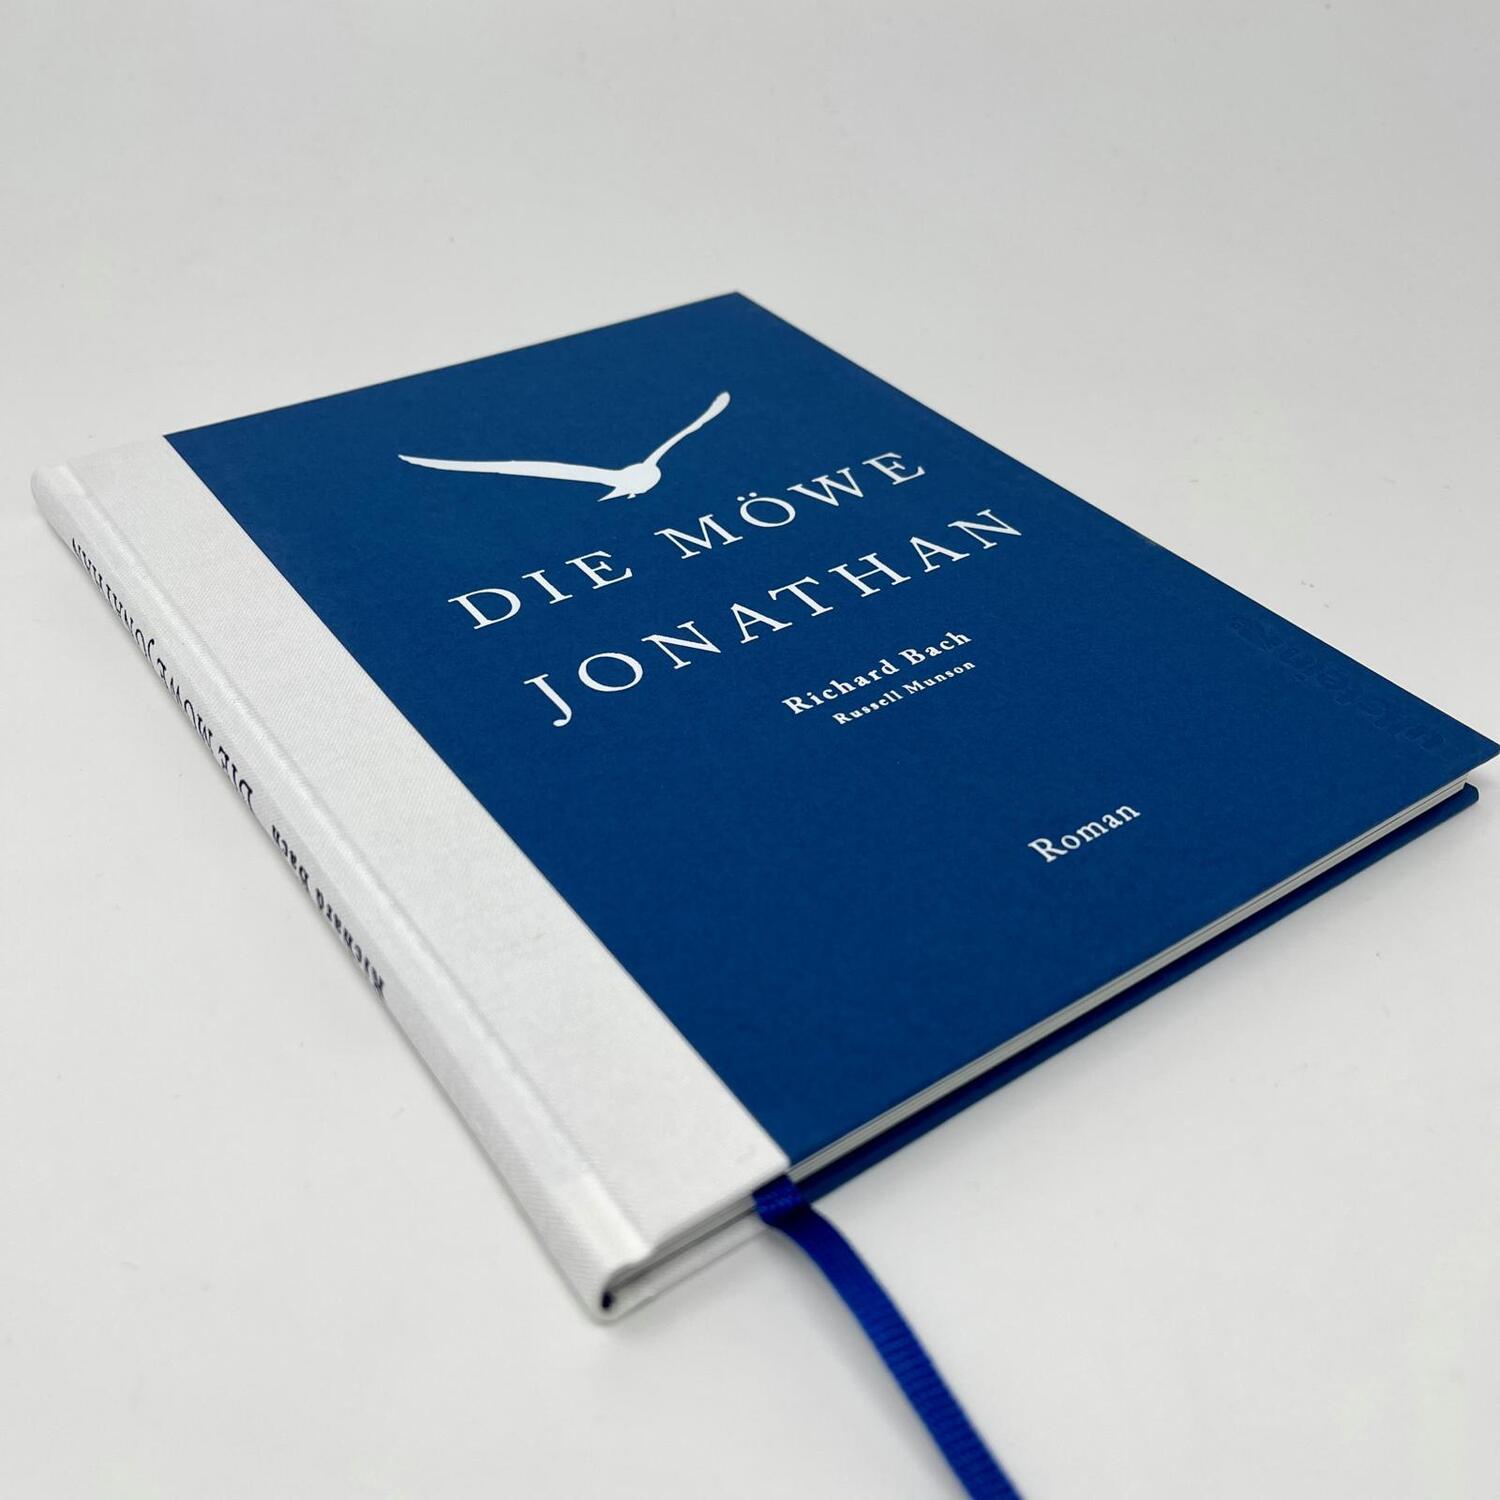 Bild: 9783550202452 | Die Möwe Jonathan | Richard Bach | Buch | Deutsch | 2022